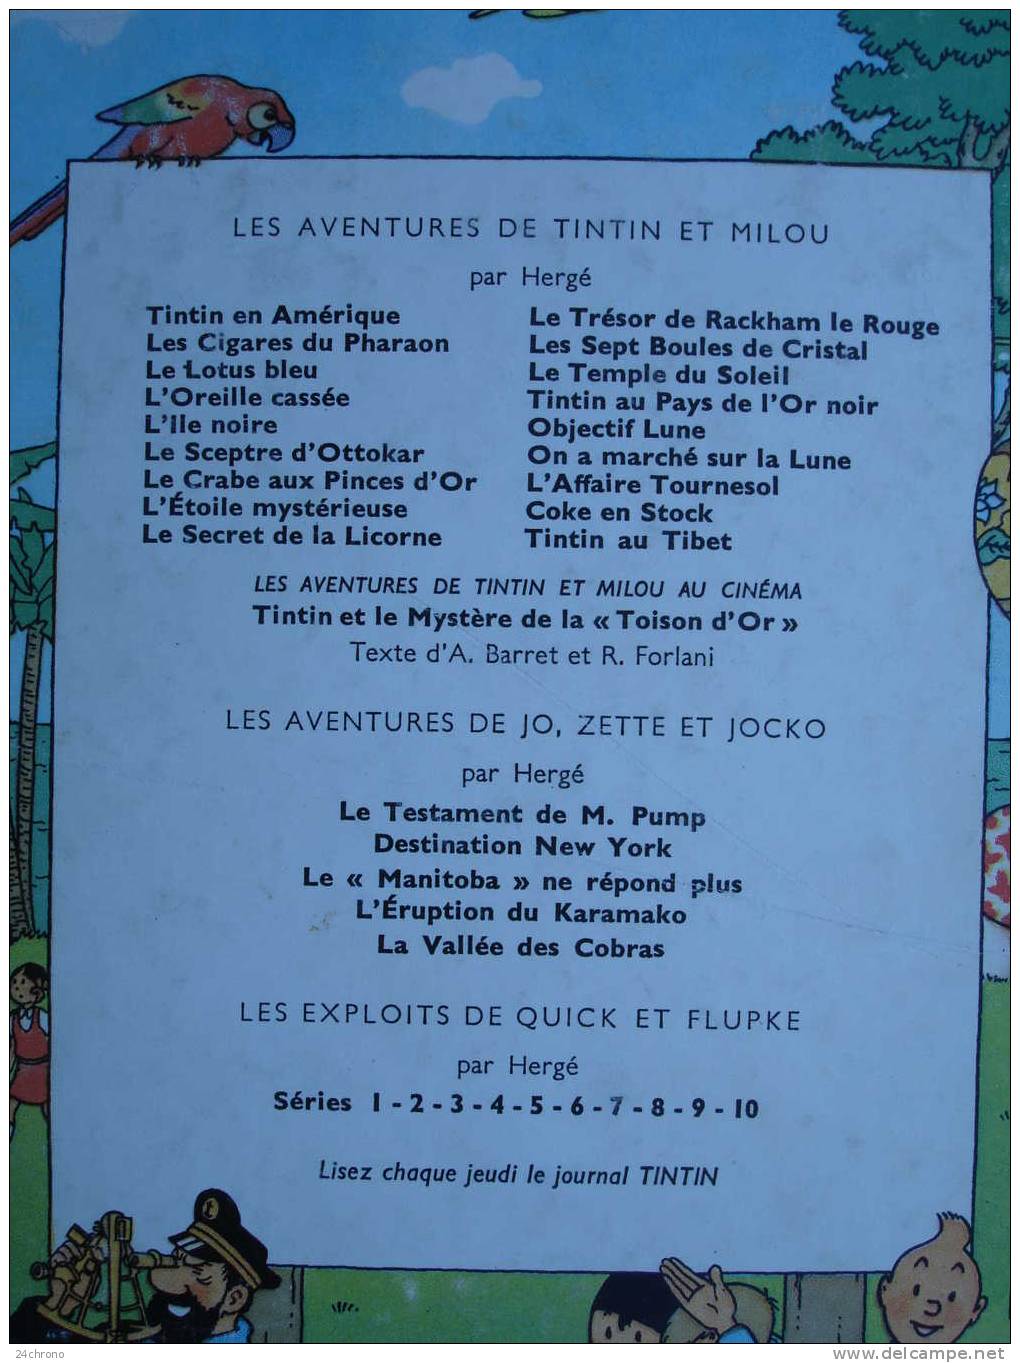 Herge: Les Aventures de Tintin, Imprime en Belgique par les Etablissements Casterman, Le Temple du Soleil, B32, 1962